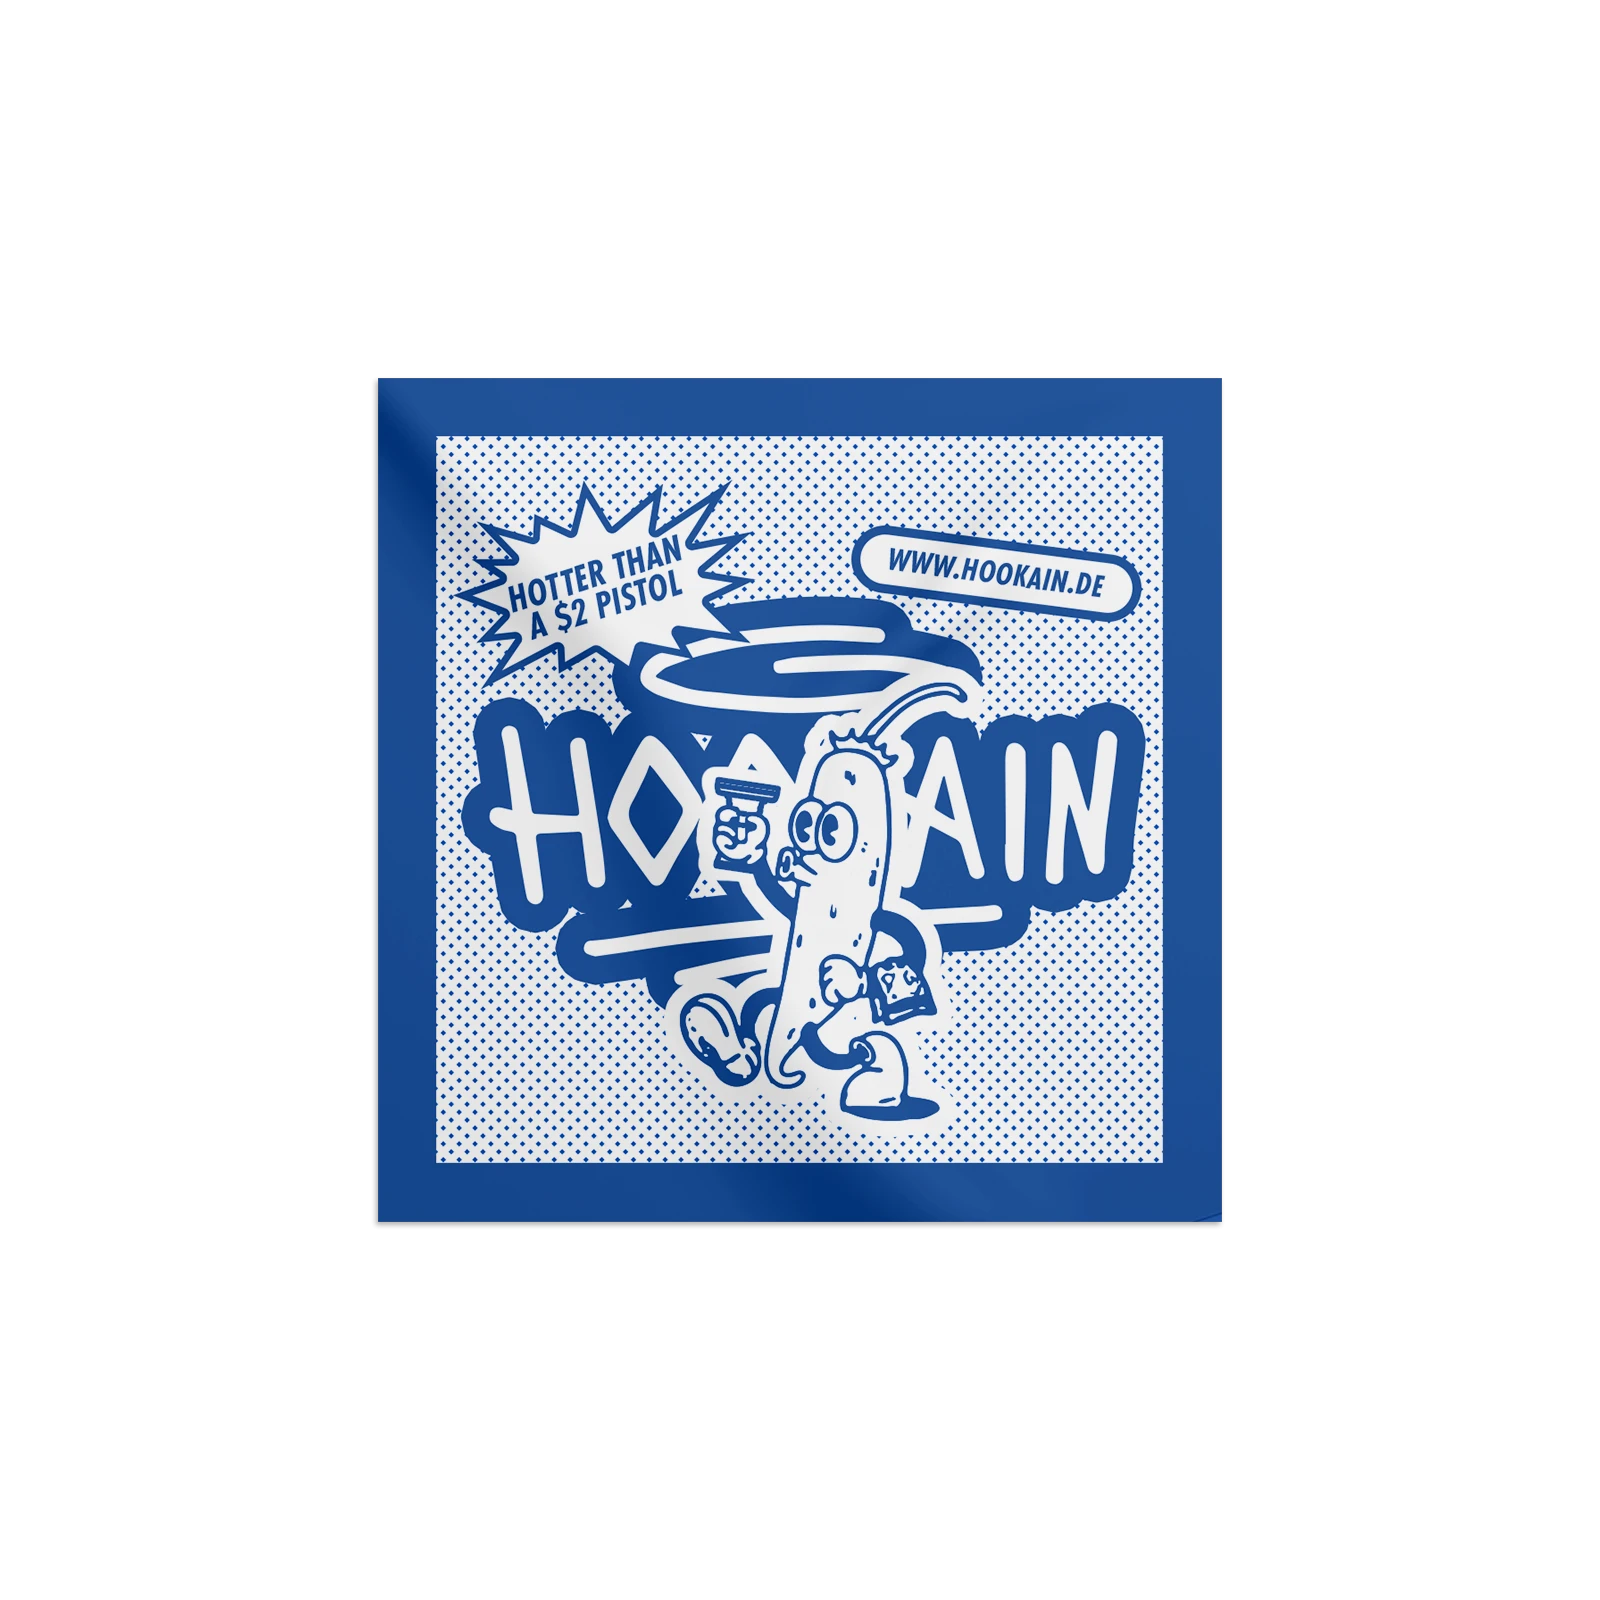  Hookain - Sticker Bundle - 11er Booster Pack - Edition A - Lustige Party Aufkleber 6